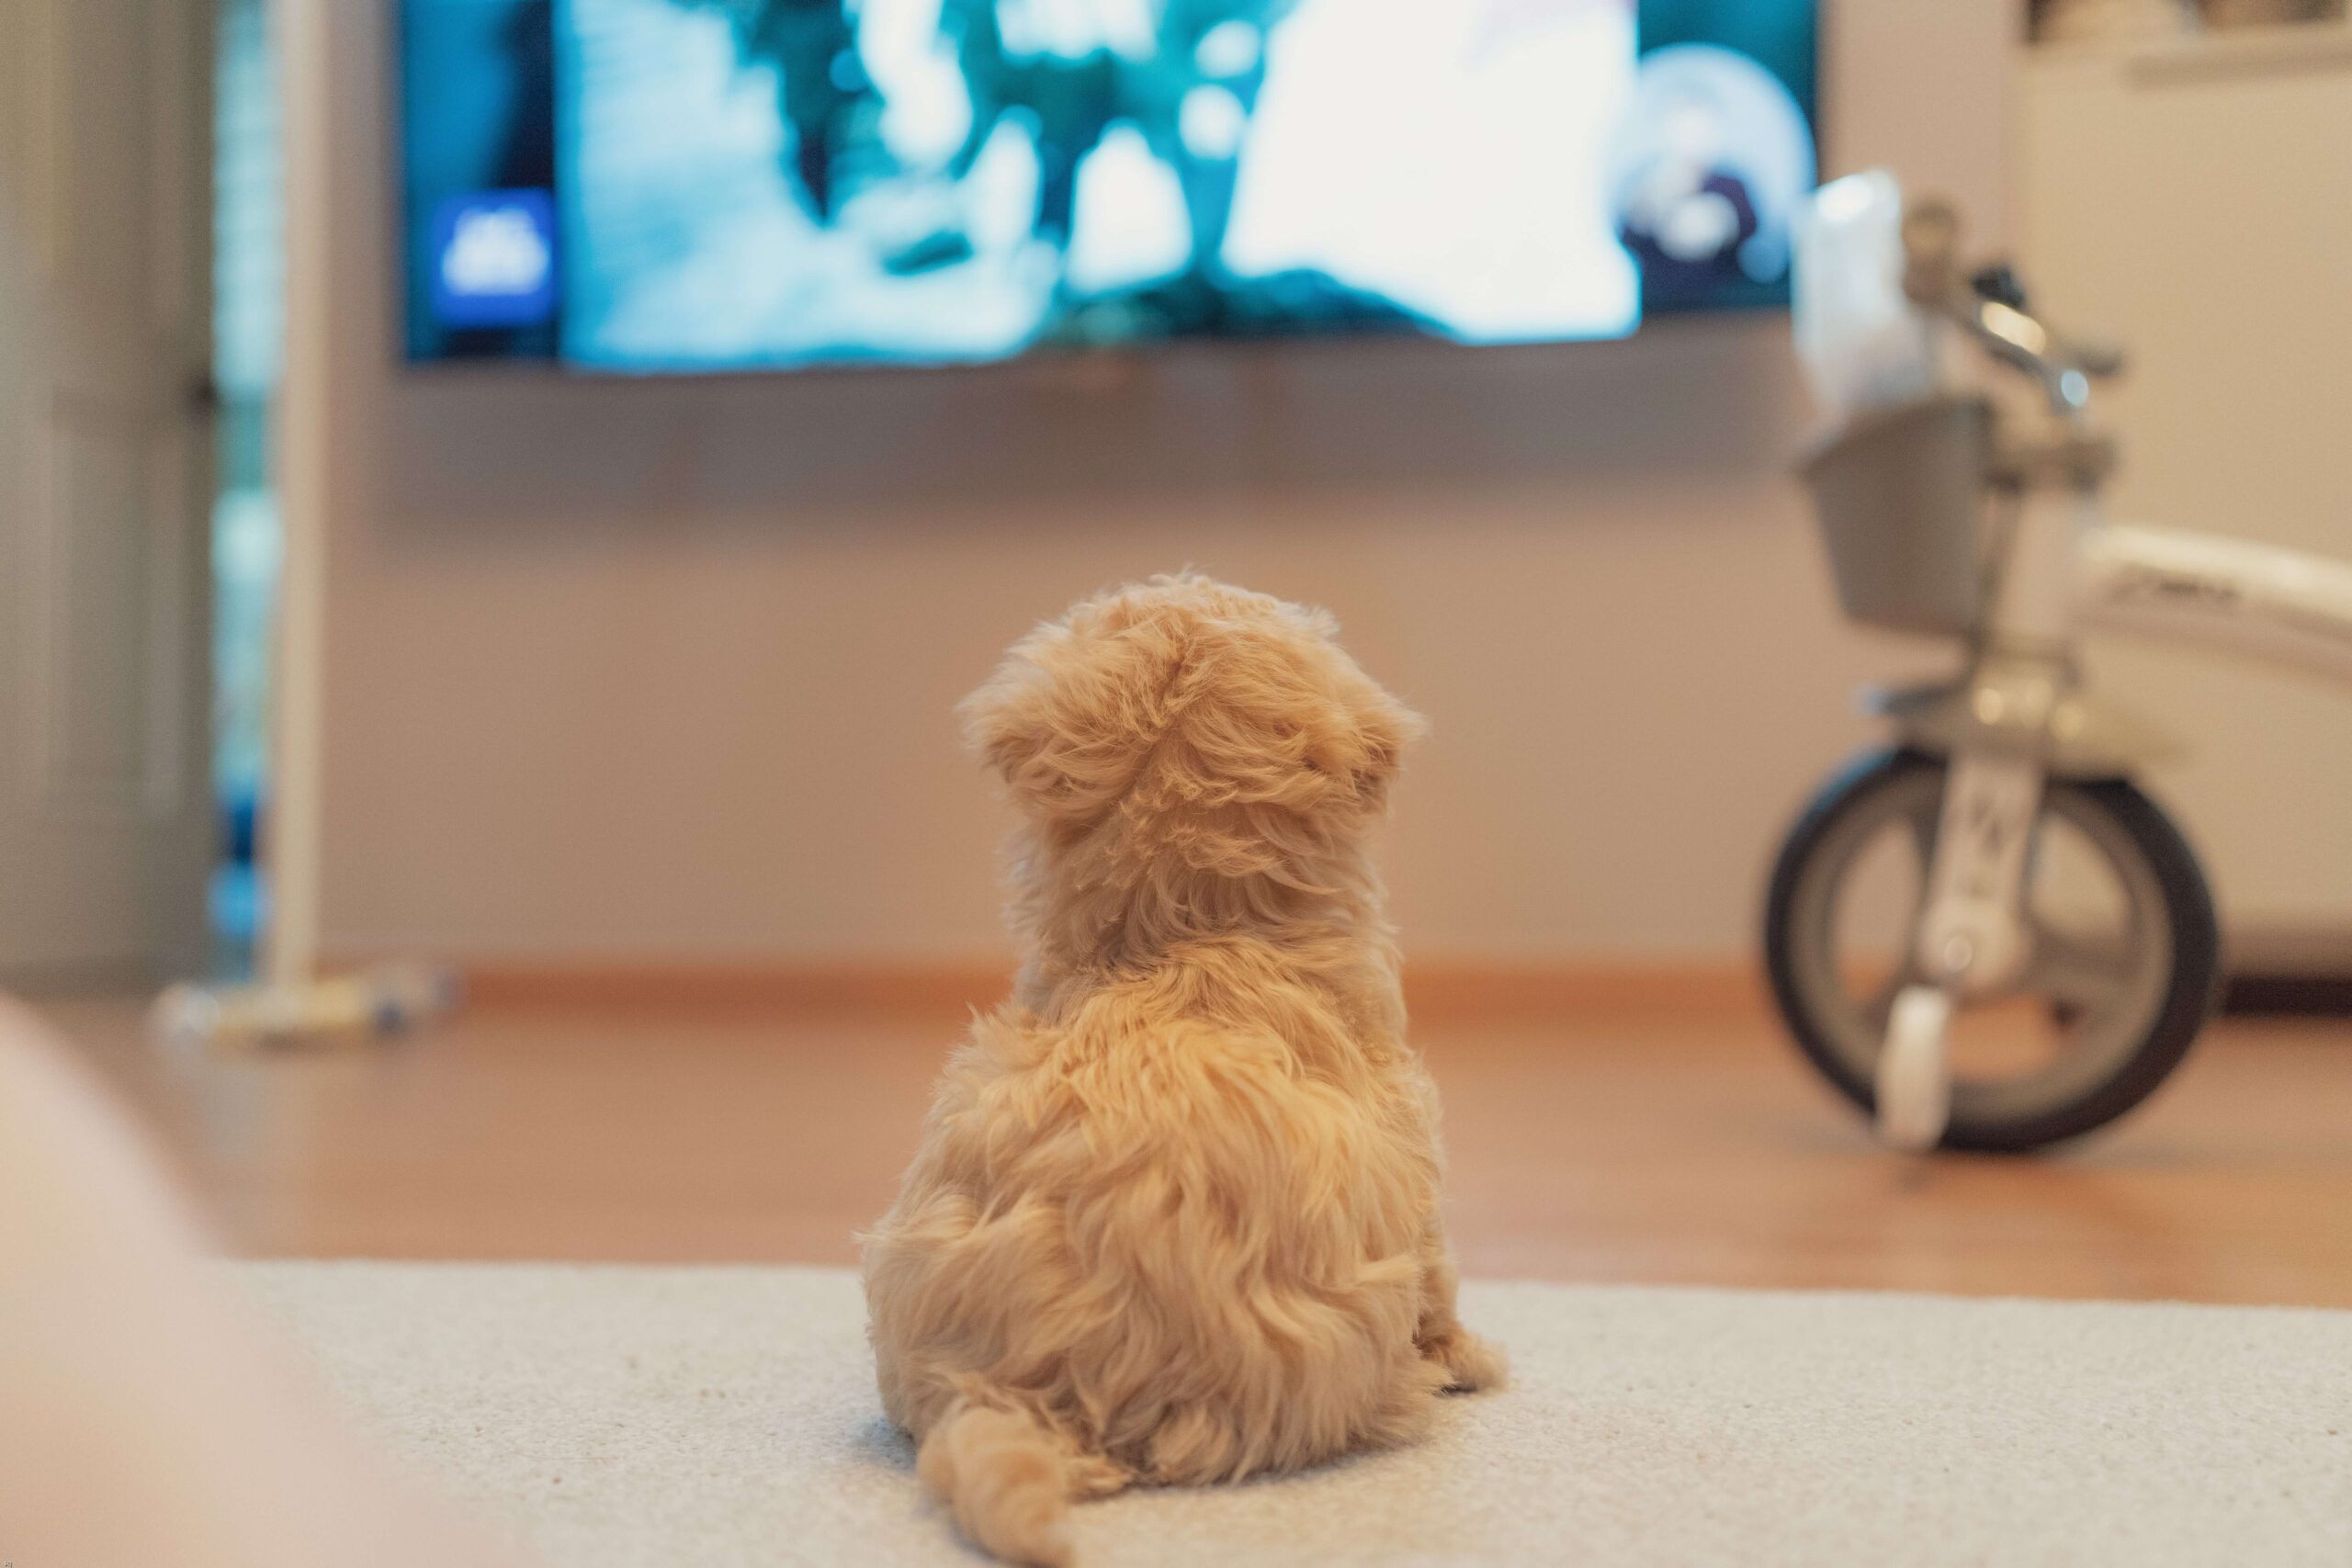 Best dog movies on Netflix